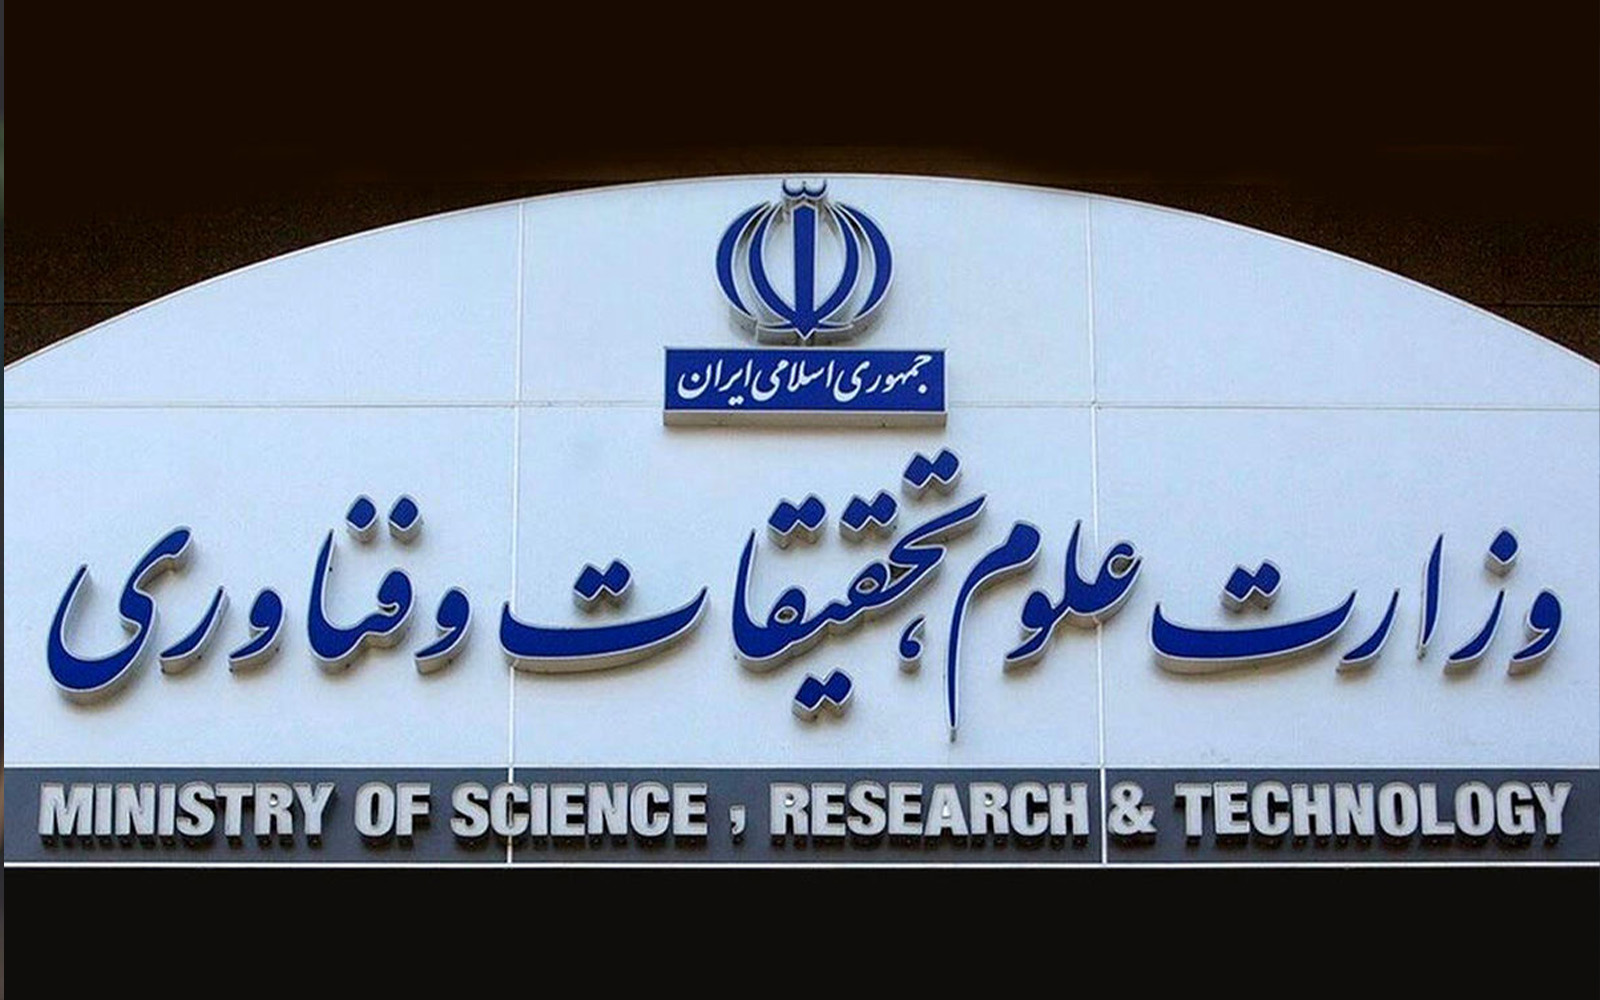 سایت وزارت علوم از دسترس خارج شد / حمله سایبری دیگر علیه نهادهای دولتی در کشور